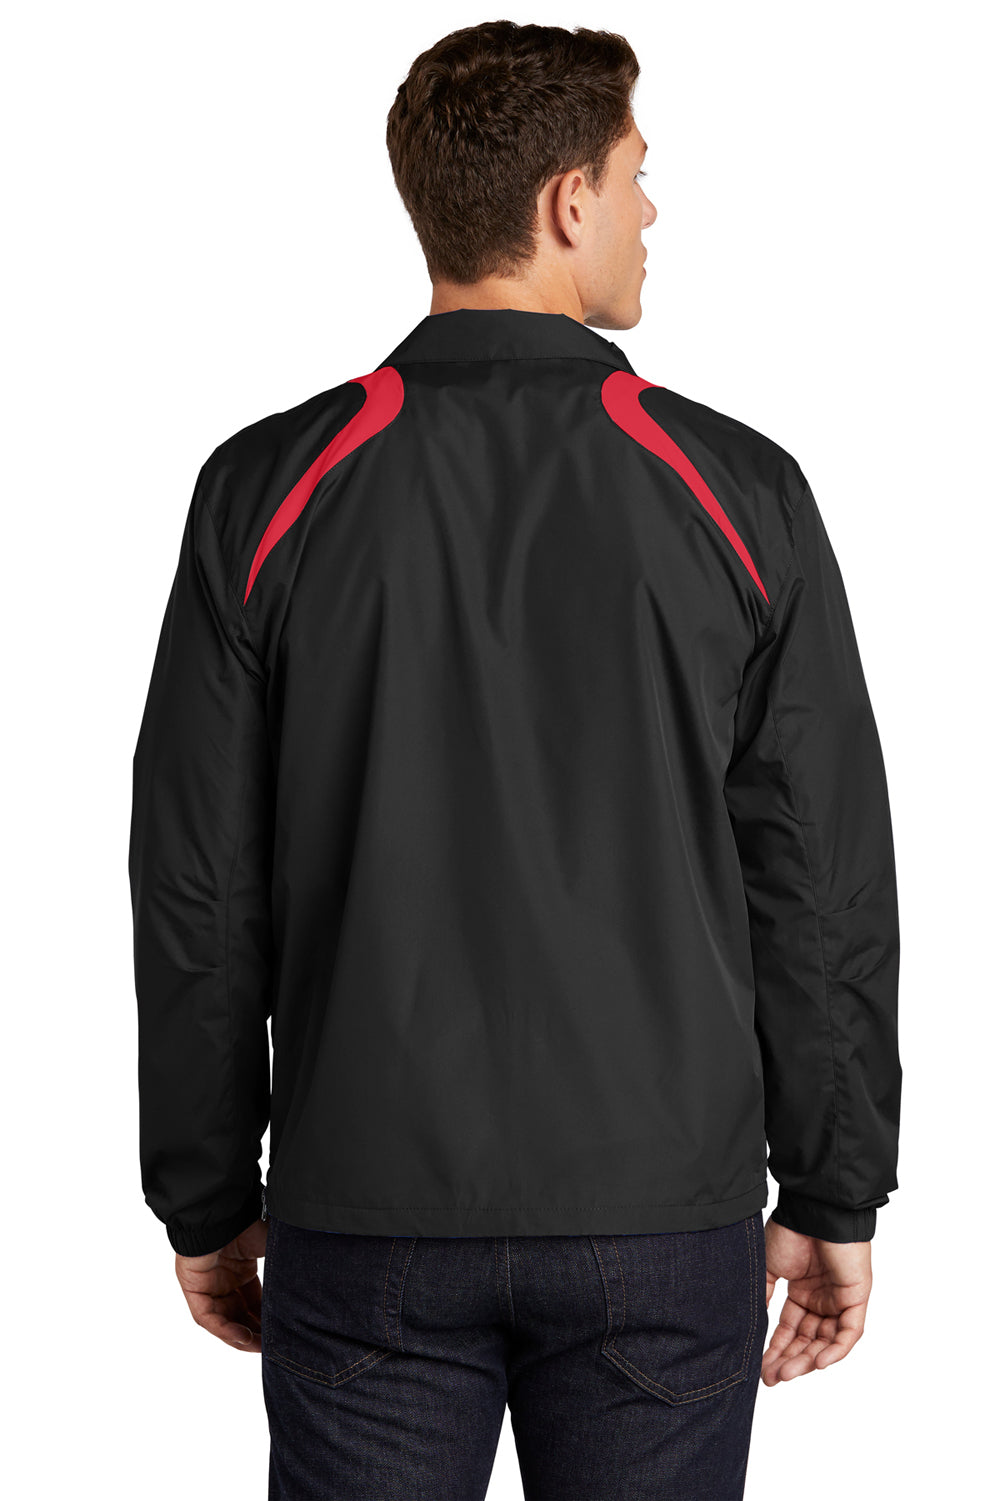 Sport-Tek JST75 Mens Water Resistant 1/4 Zip Wind Jacket Black/Red Back